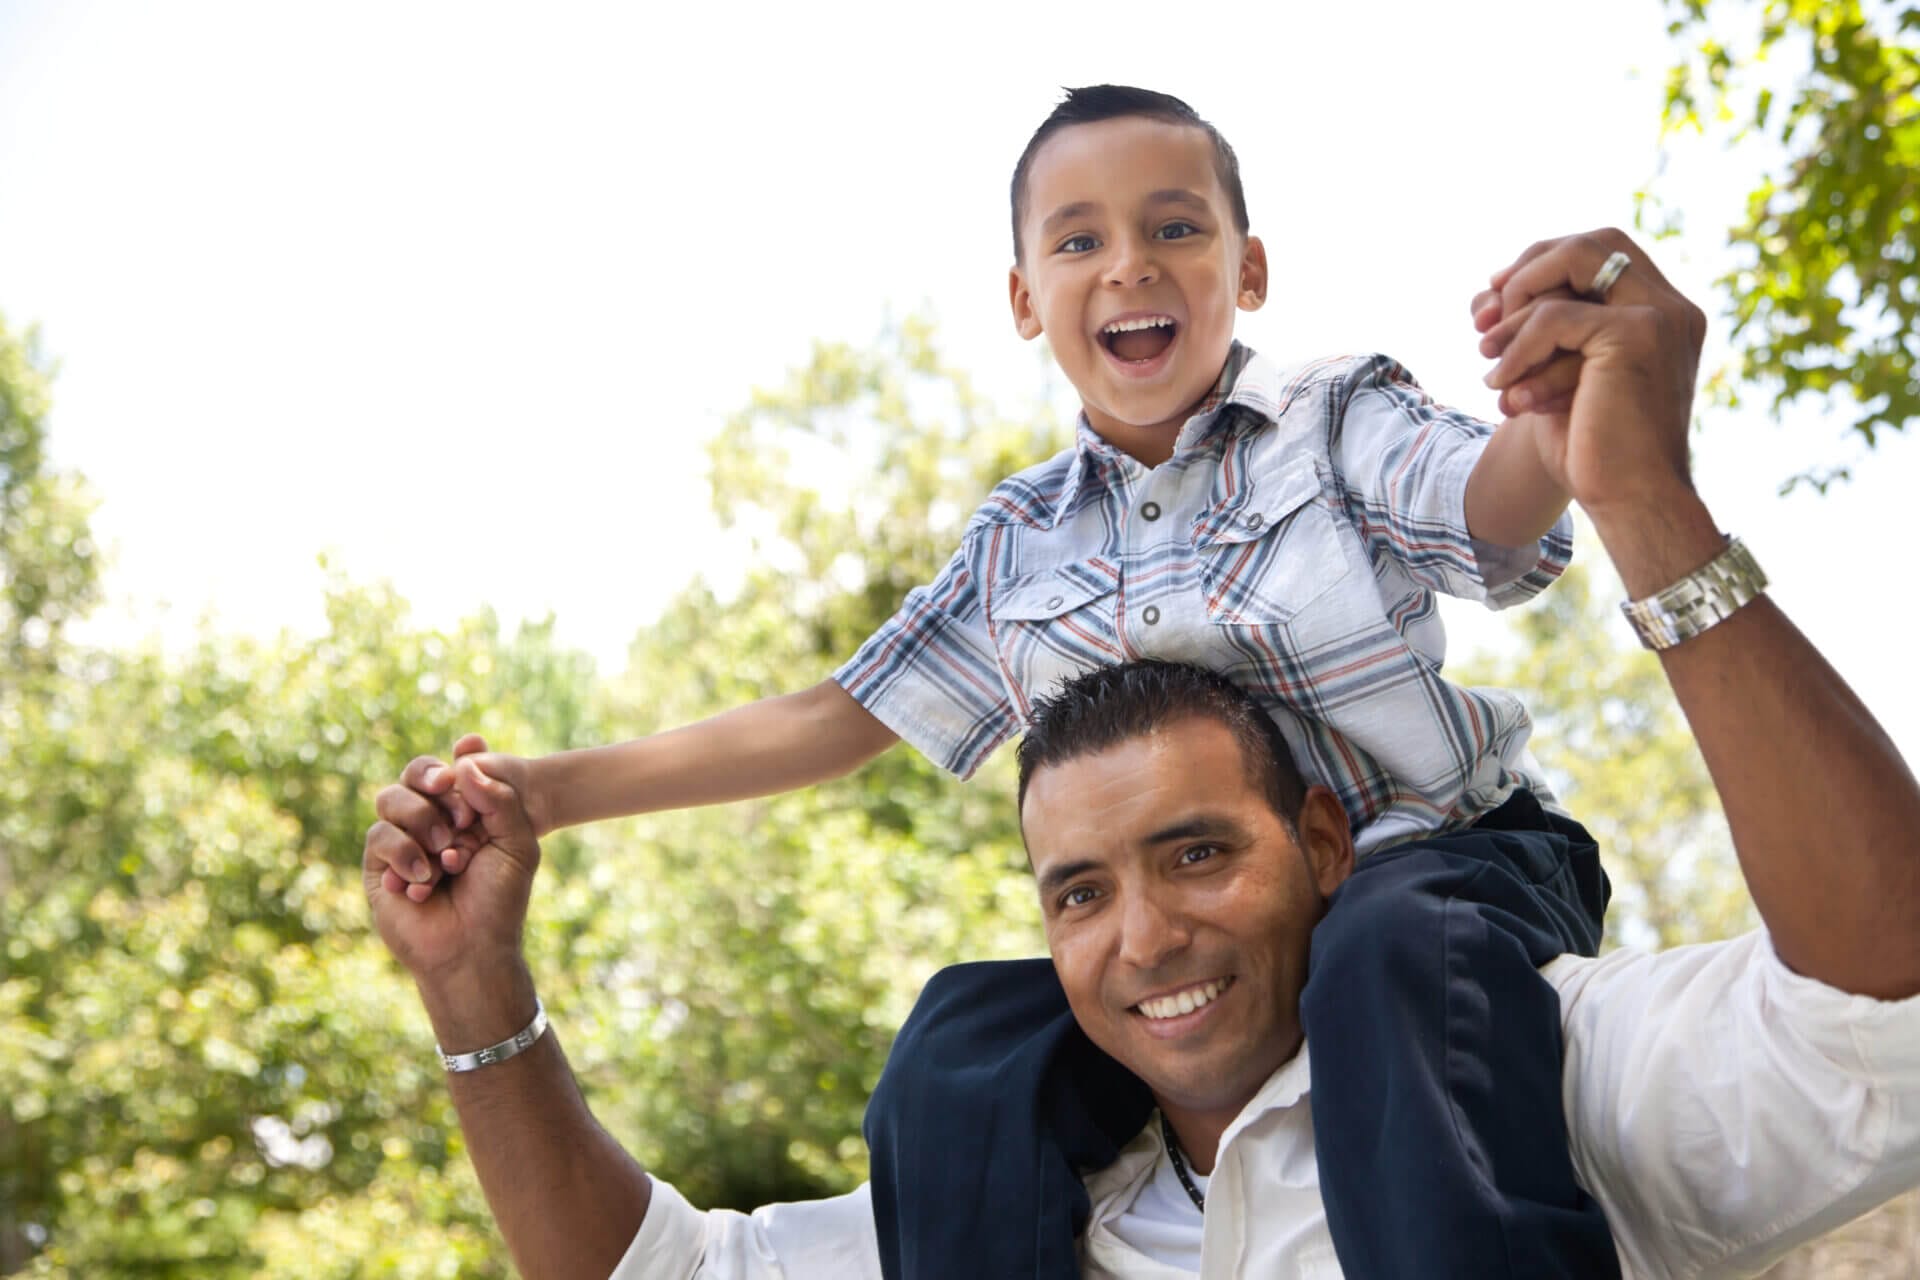 Padre e hijo migrantes, felices porque aprovecharon la ciudadanía para hijos de inmigrantes en Estados Unidos.